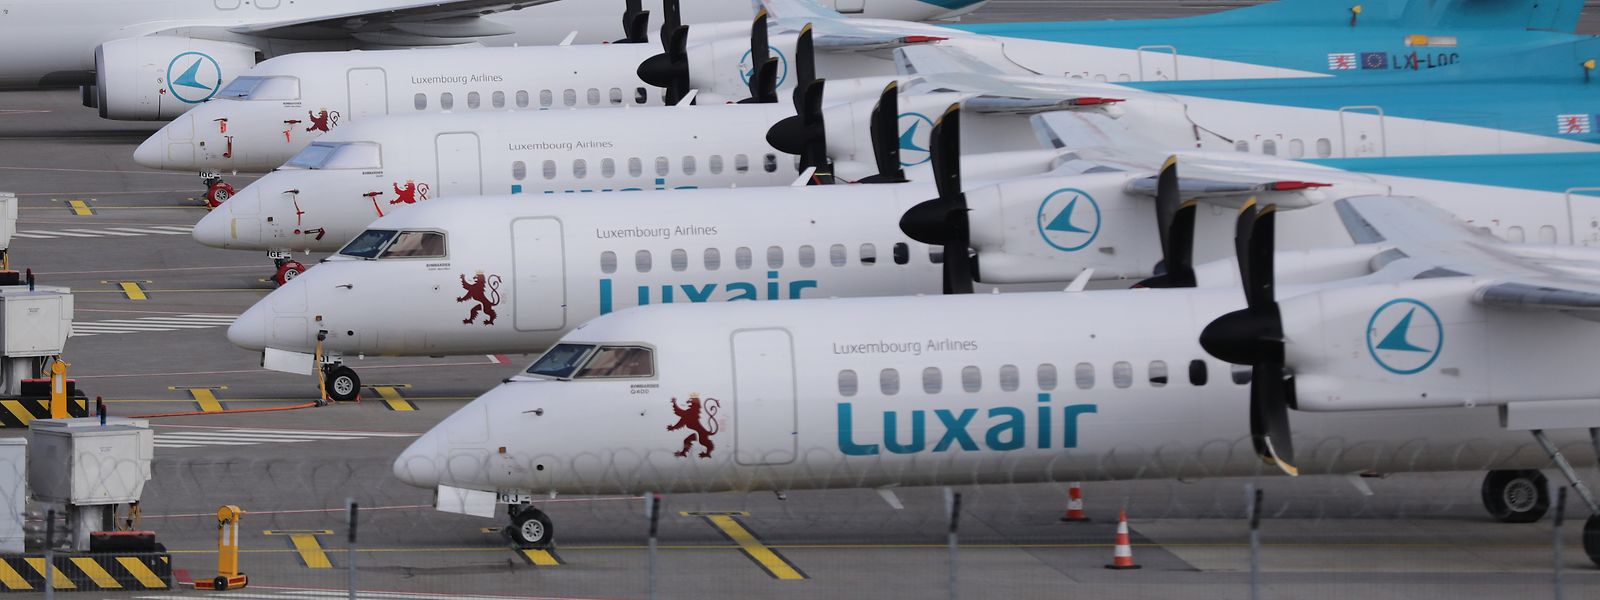 A companhia aérea luxemburguesa diz não ter planos imediatos de instalar 4G e 5G a bordo dos aviões.
